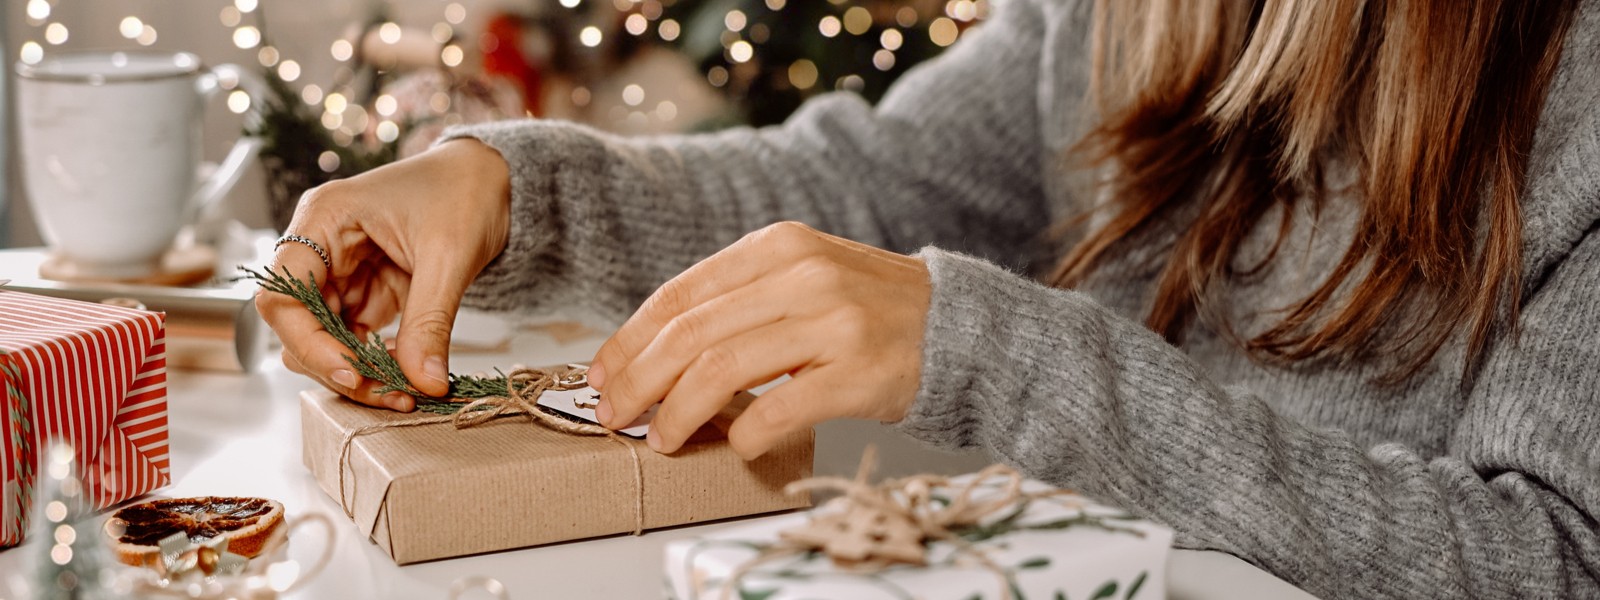 Velký průvodce balením dárků aneb jak originálně zabalit dárky na Vánoce?